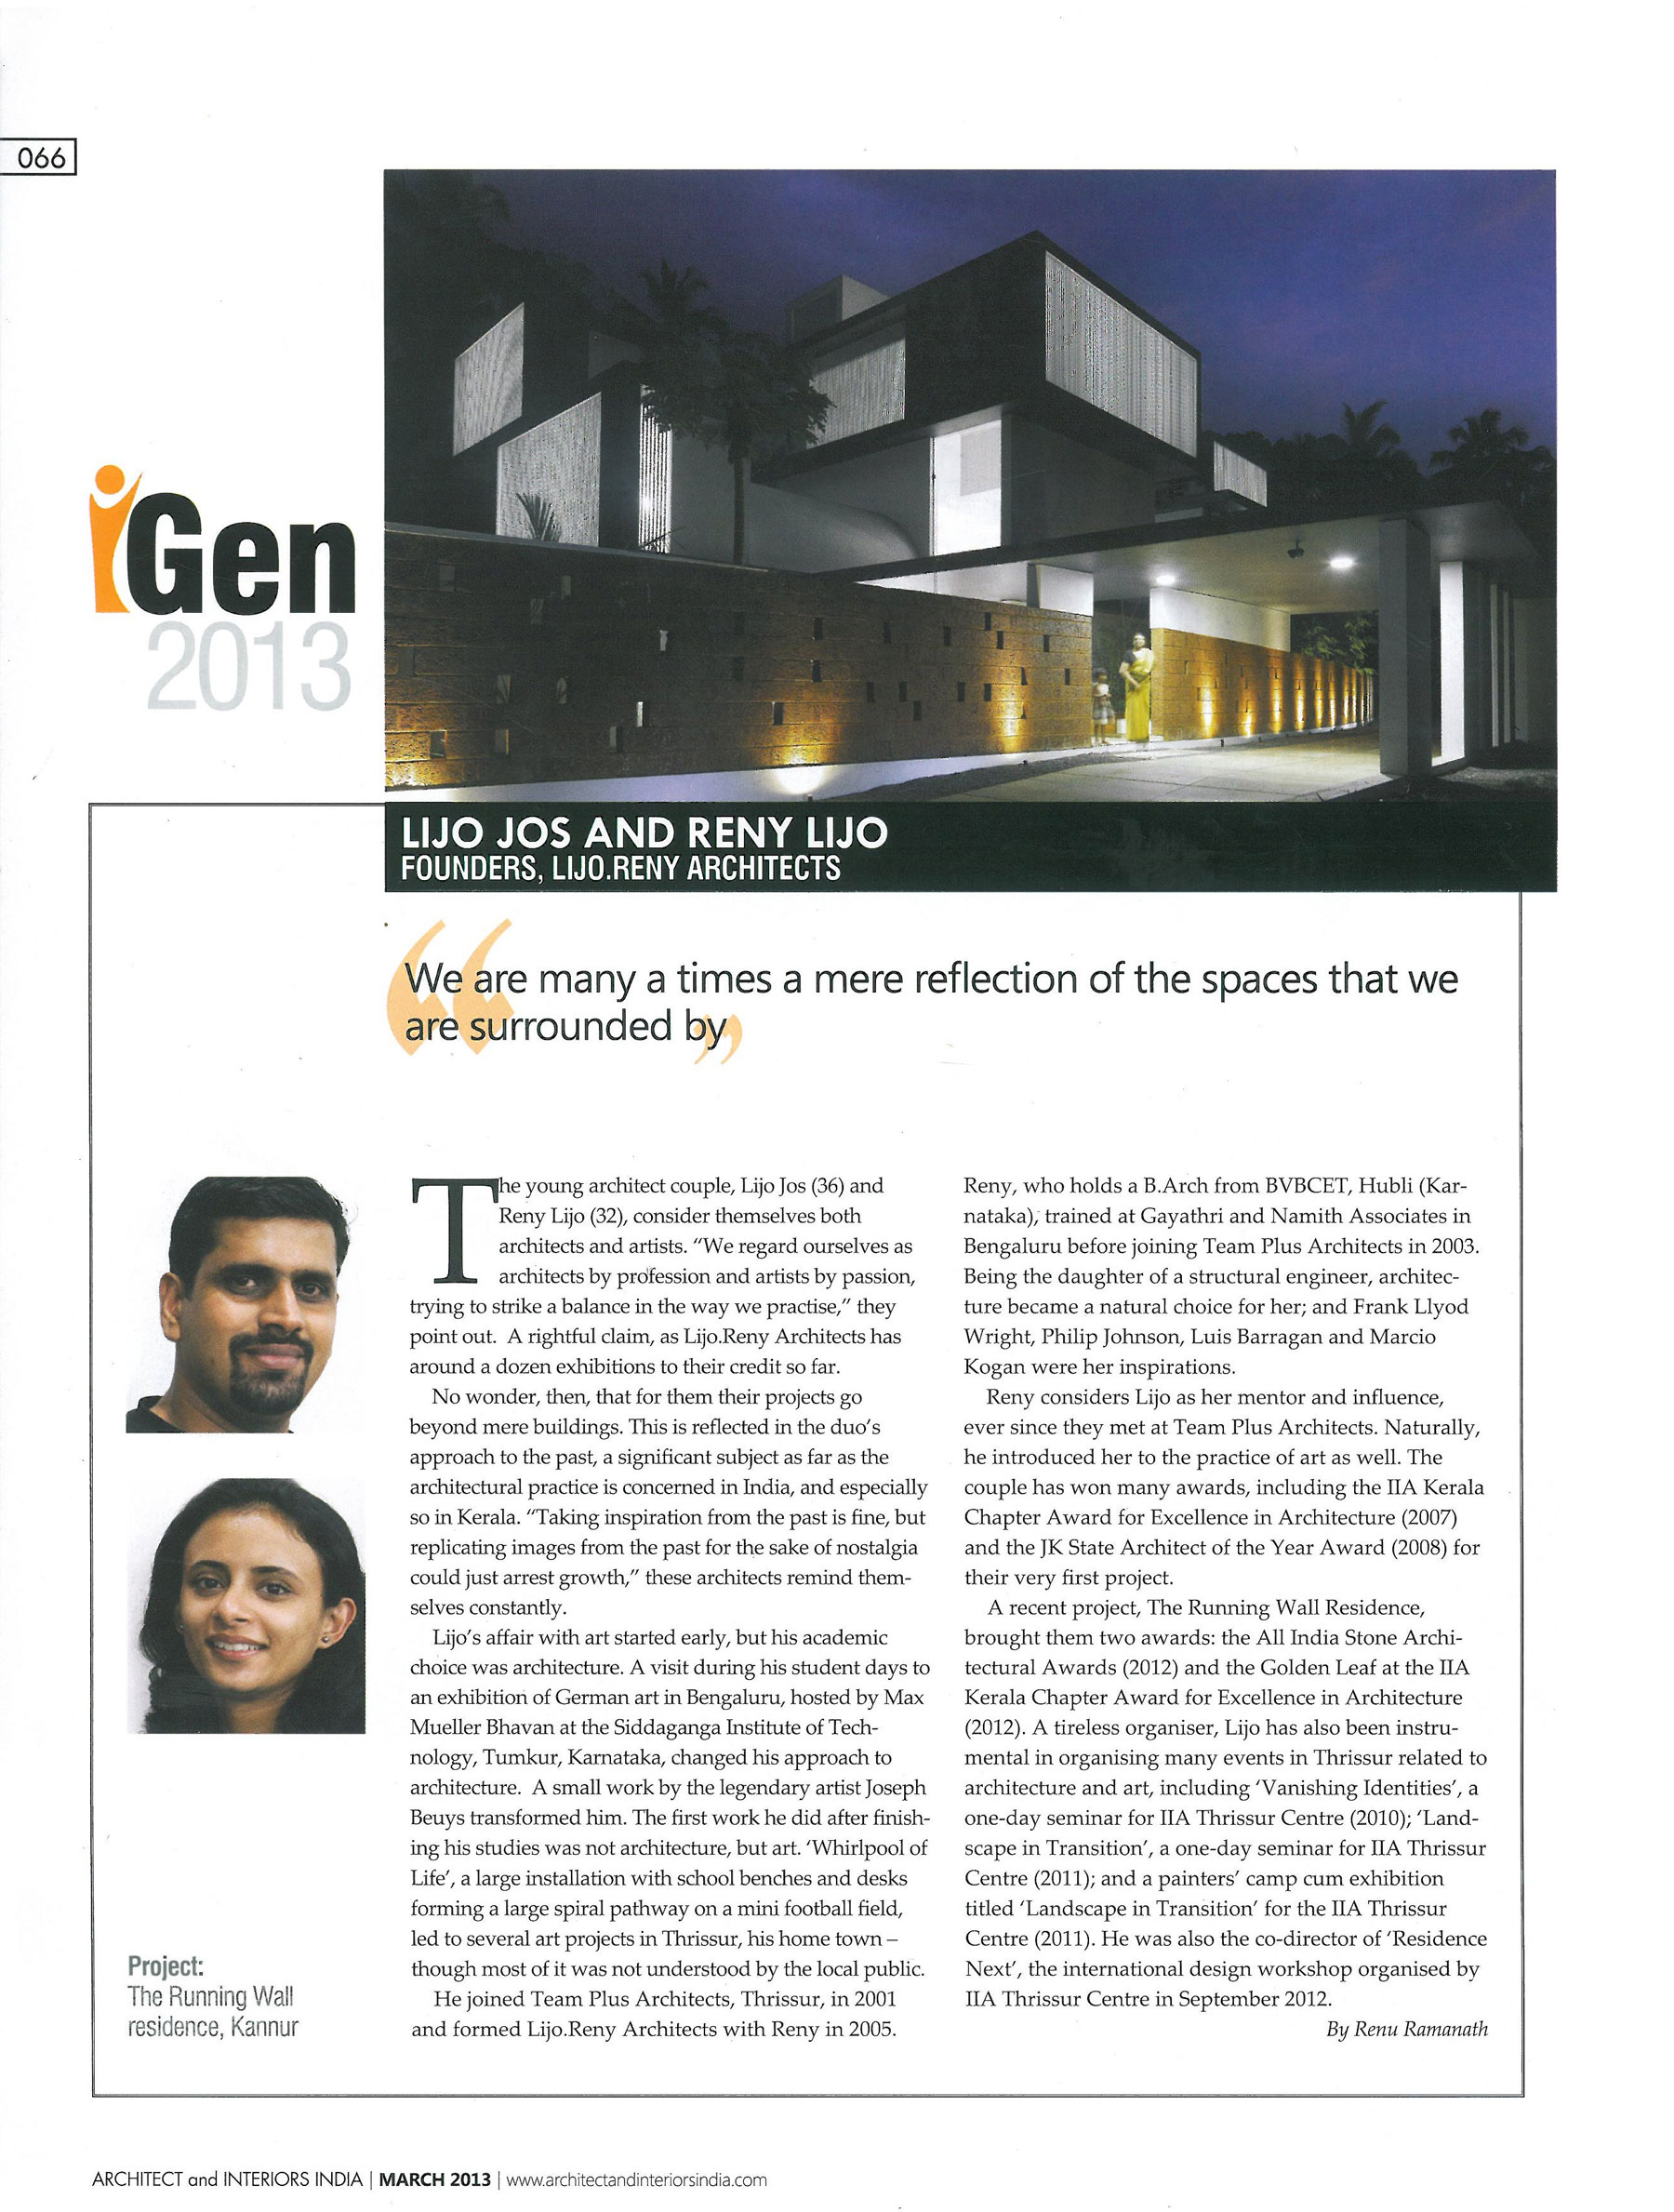 architect-interiors-india-magazine-india-feature-ar-lijo-jos-and-ar-reny-lijo-for-igen-2013-2